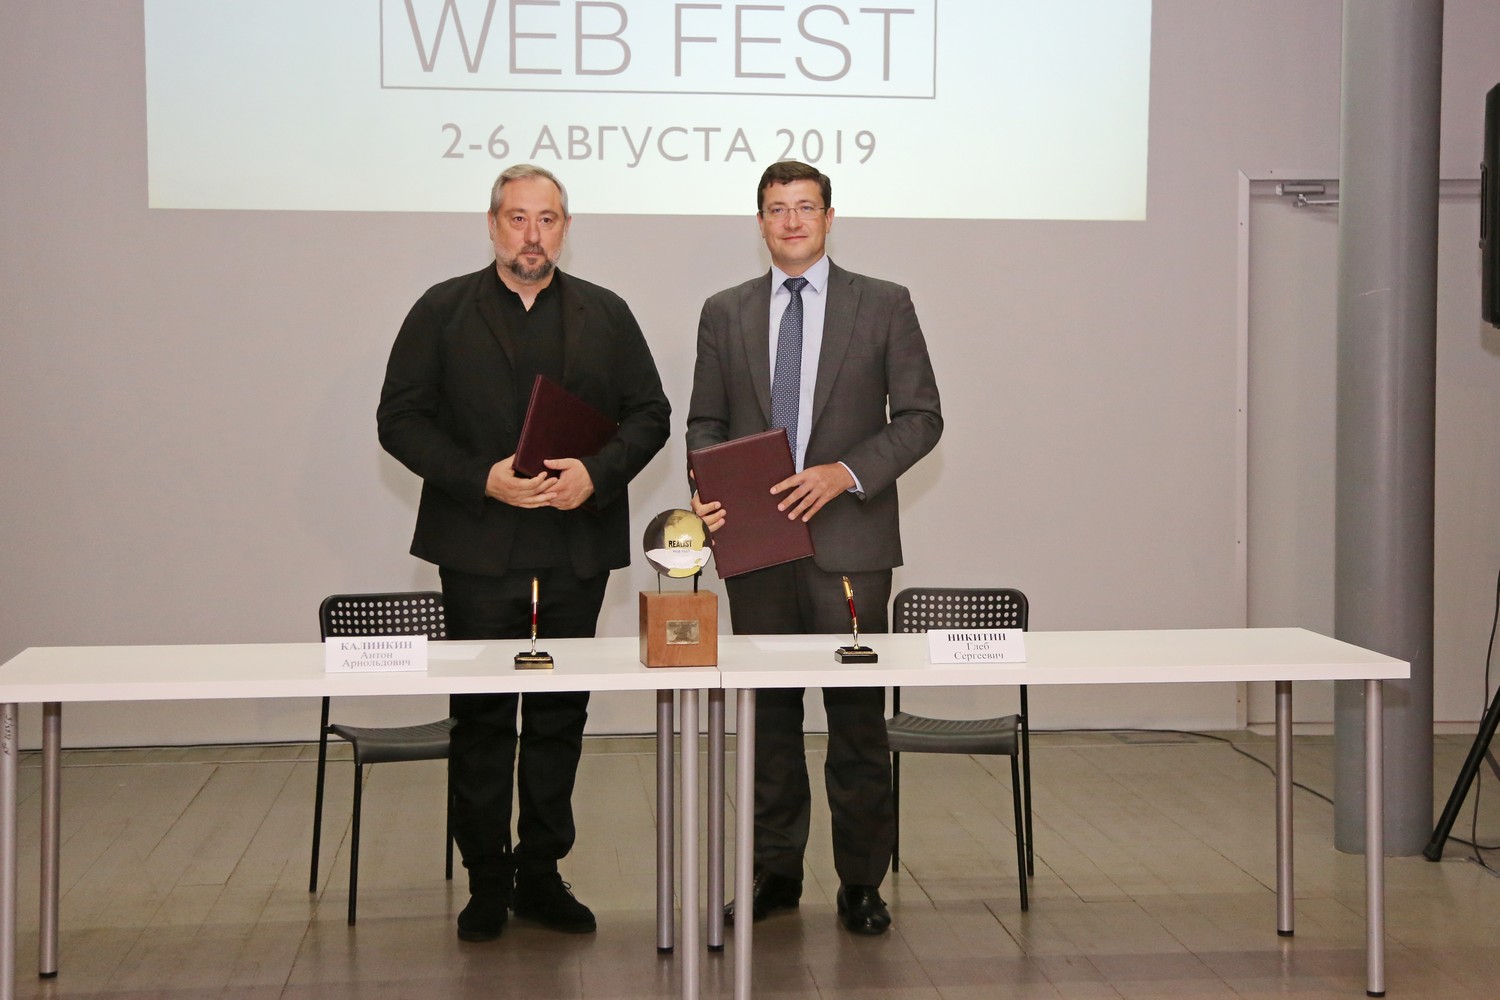 Фестиваль веб-сериалов «REALIST WEB FEST» будет проводиться в Нижегородской области пять лет подряд - фото 1